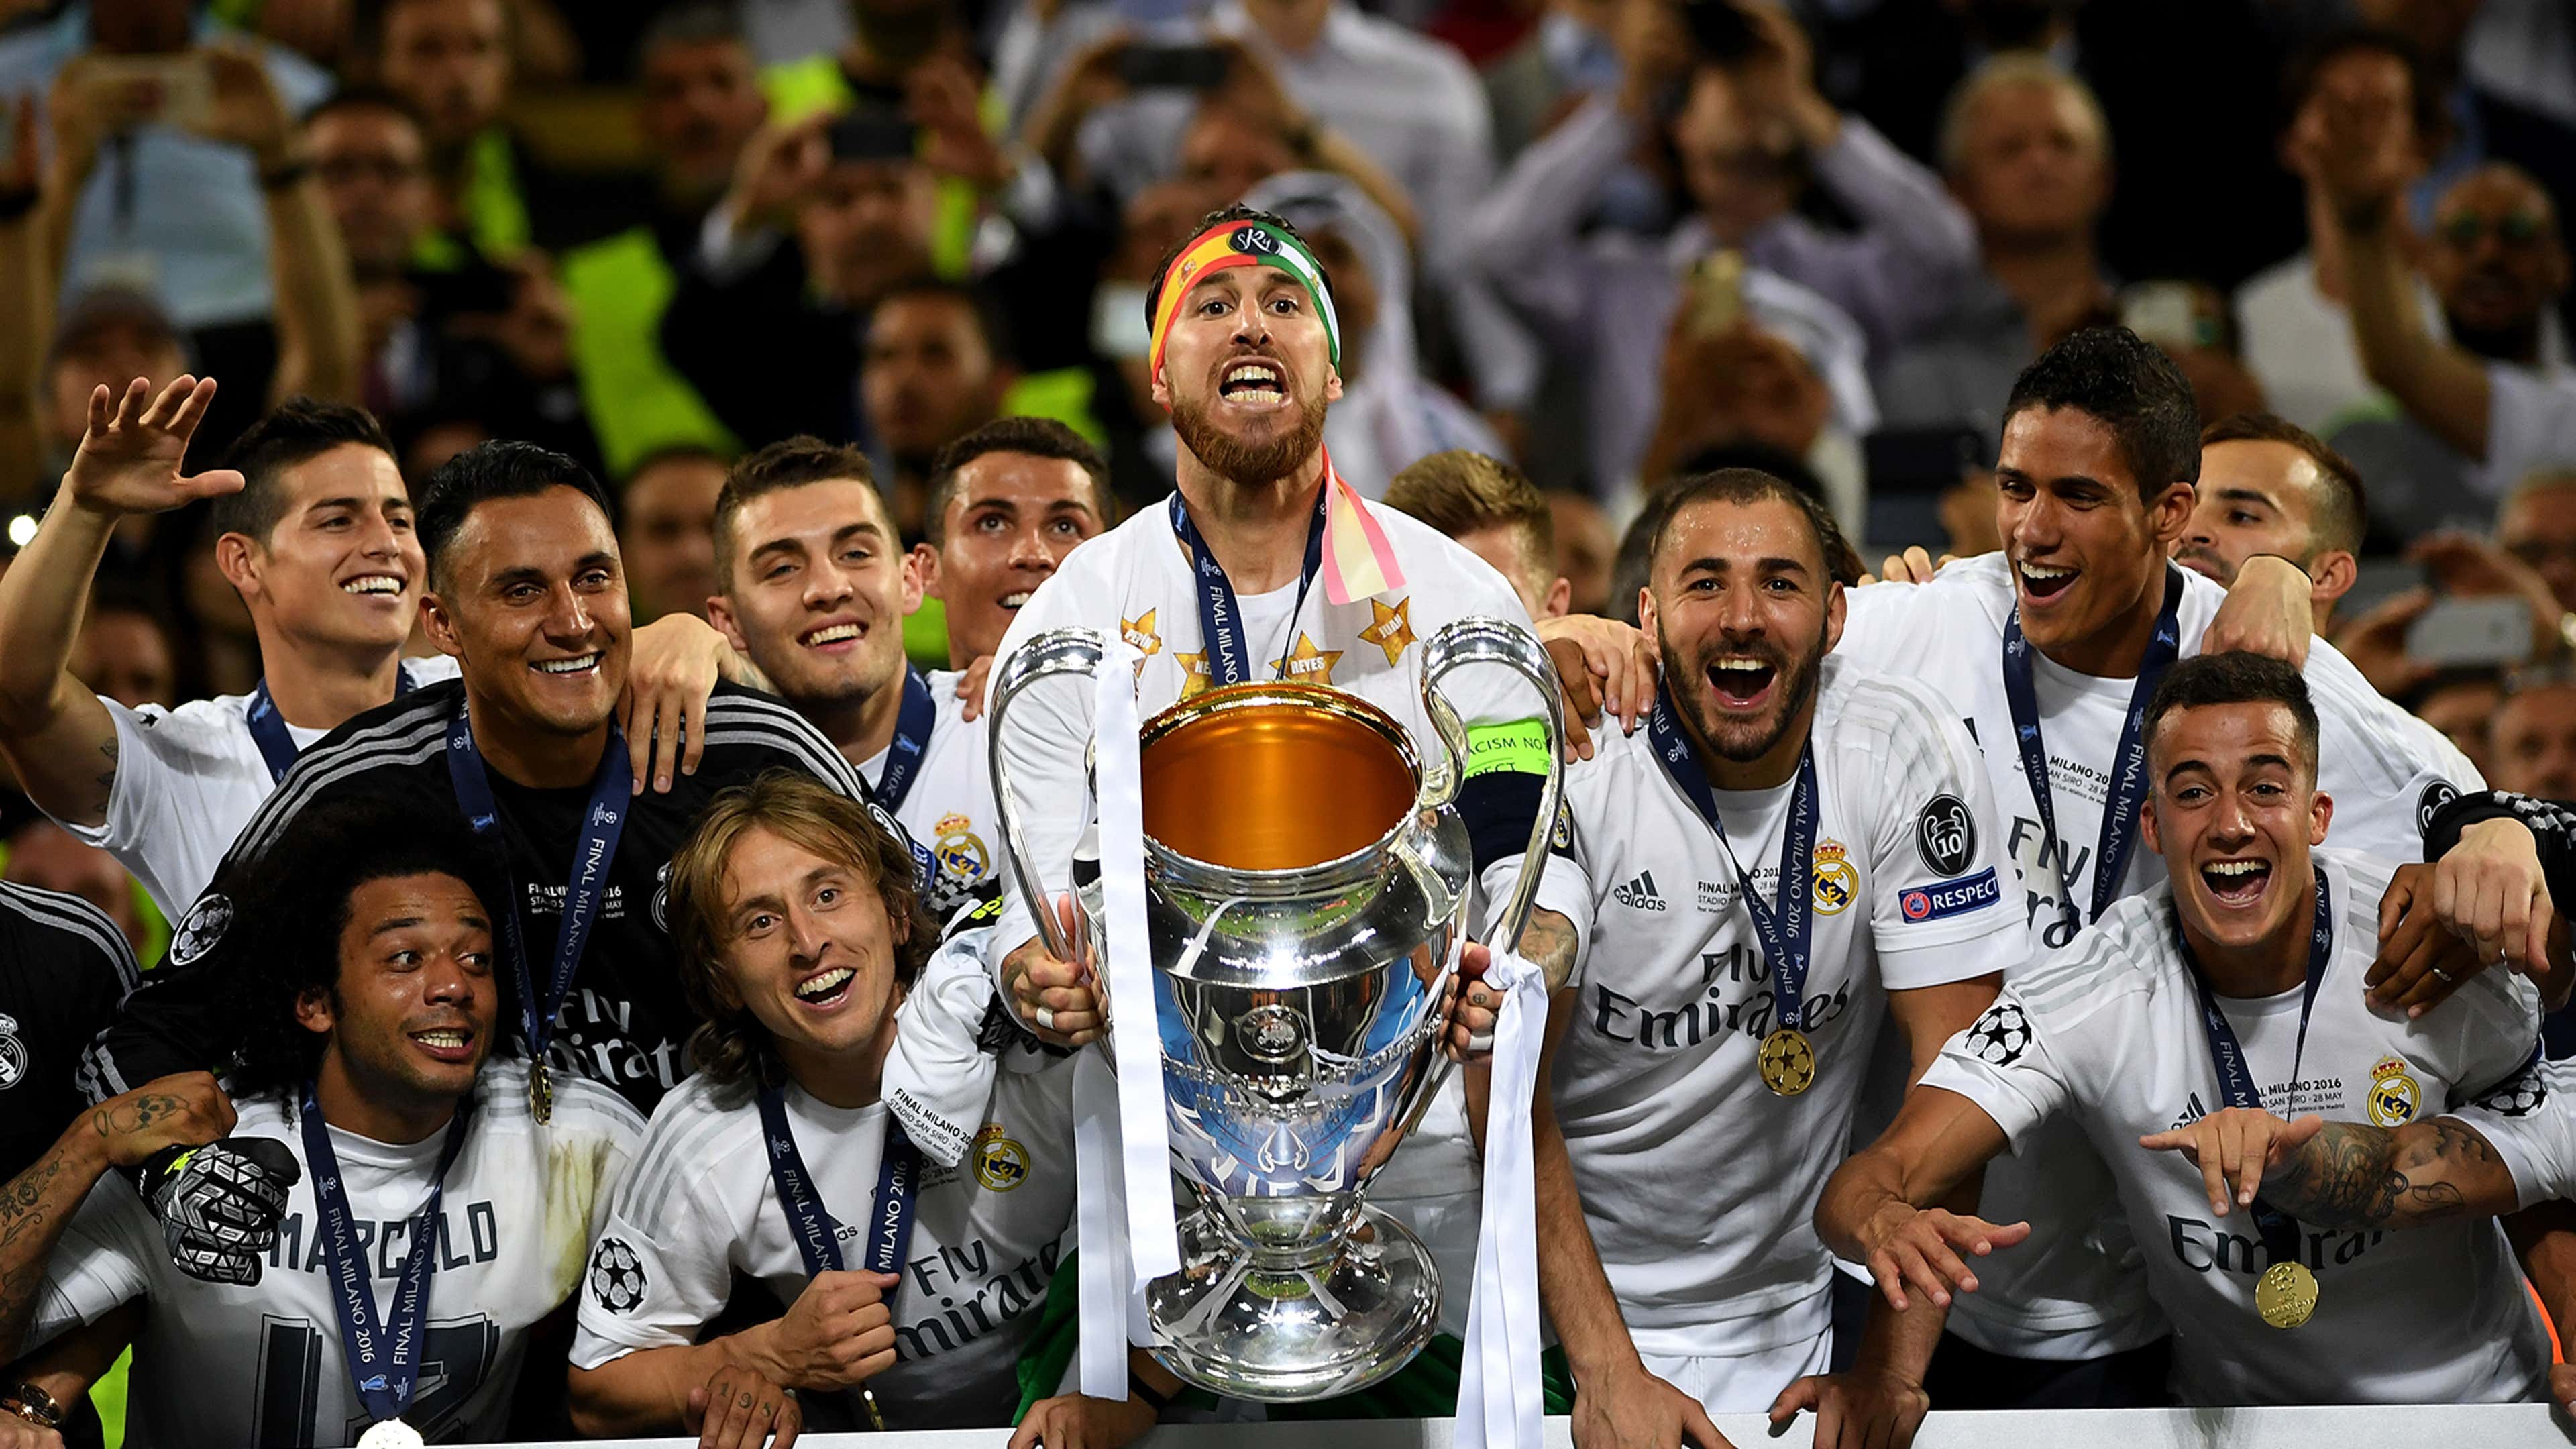 Relembre as cinco maiores finais da história da Champions League